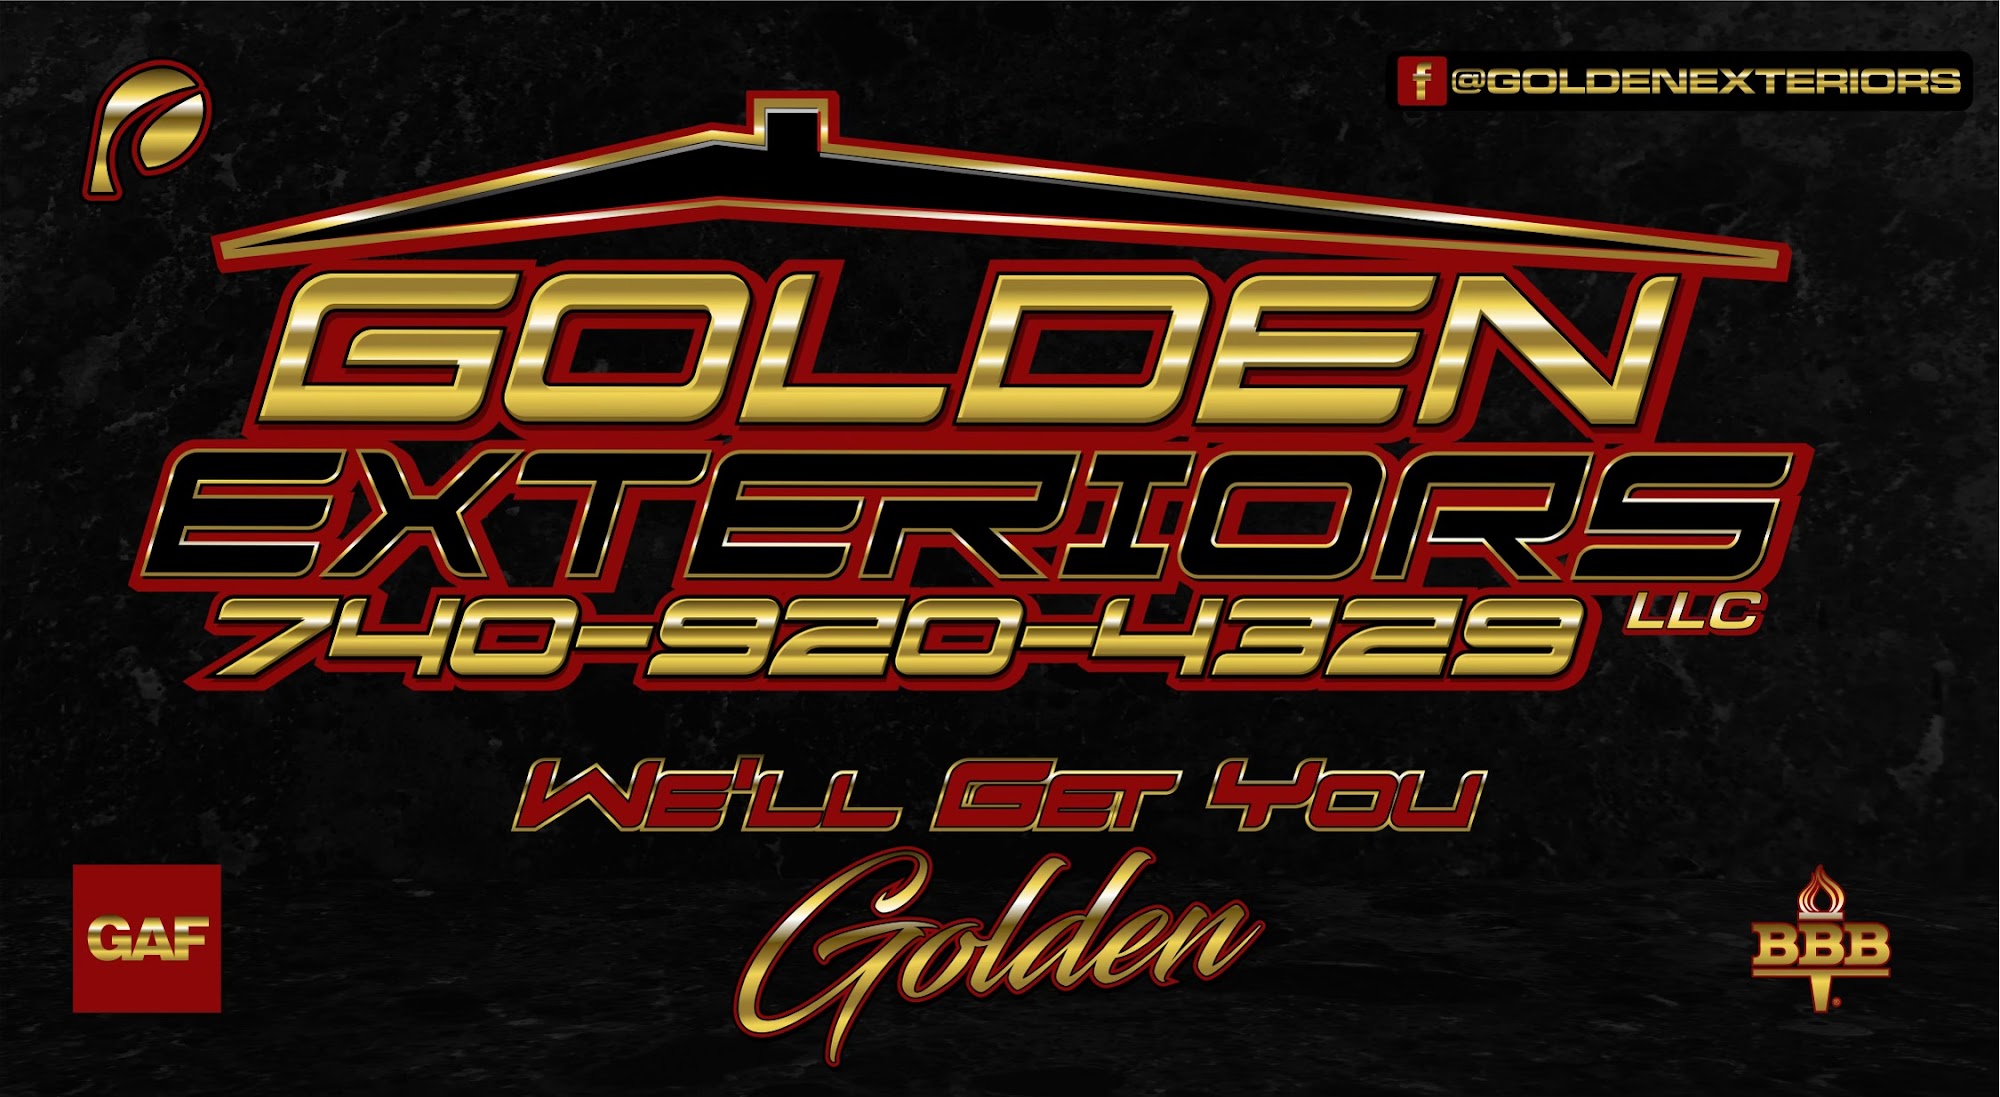 Golden exteriors LLC